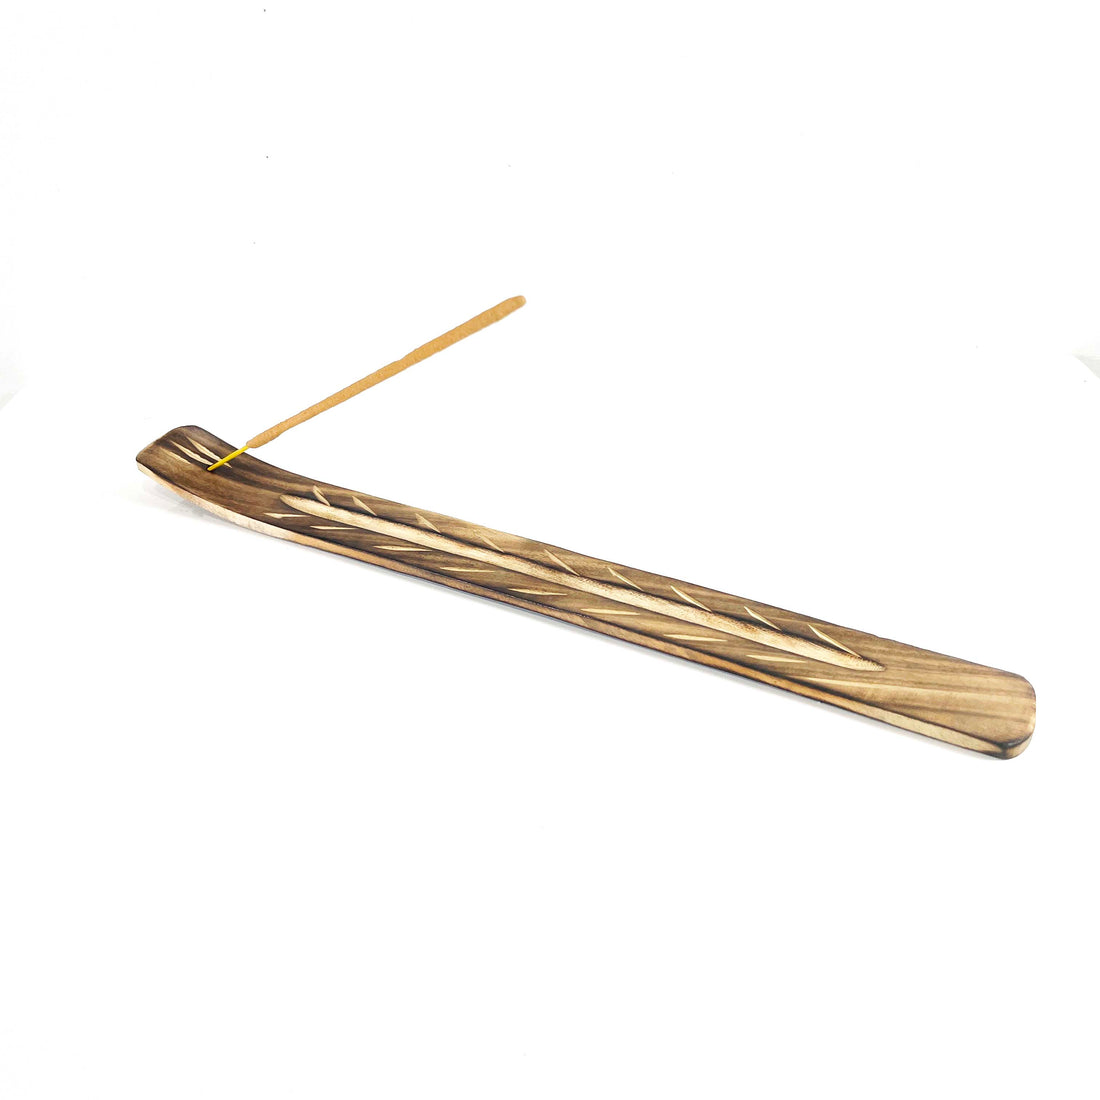 10 inch wood incense stick burner